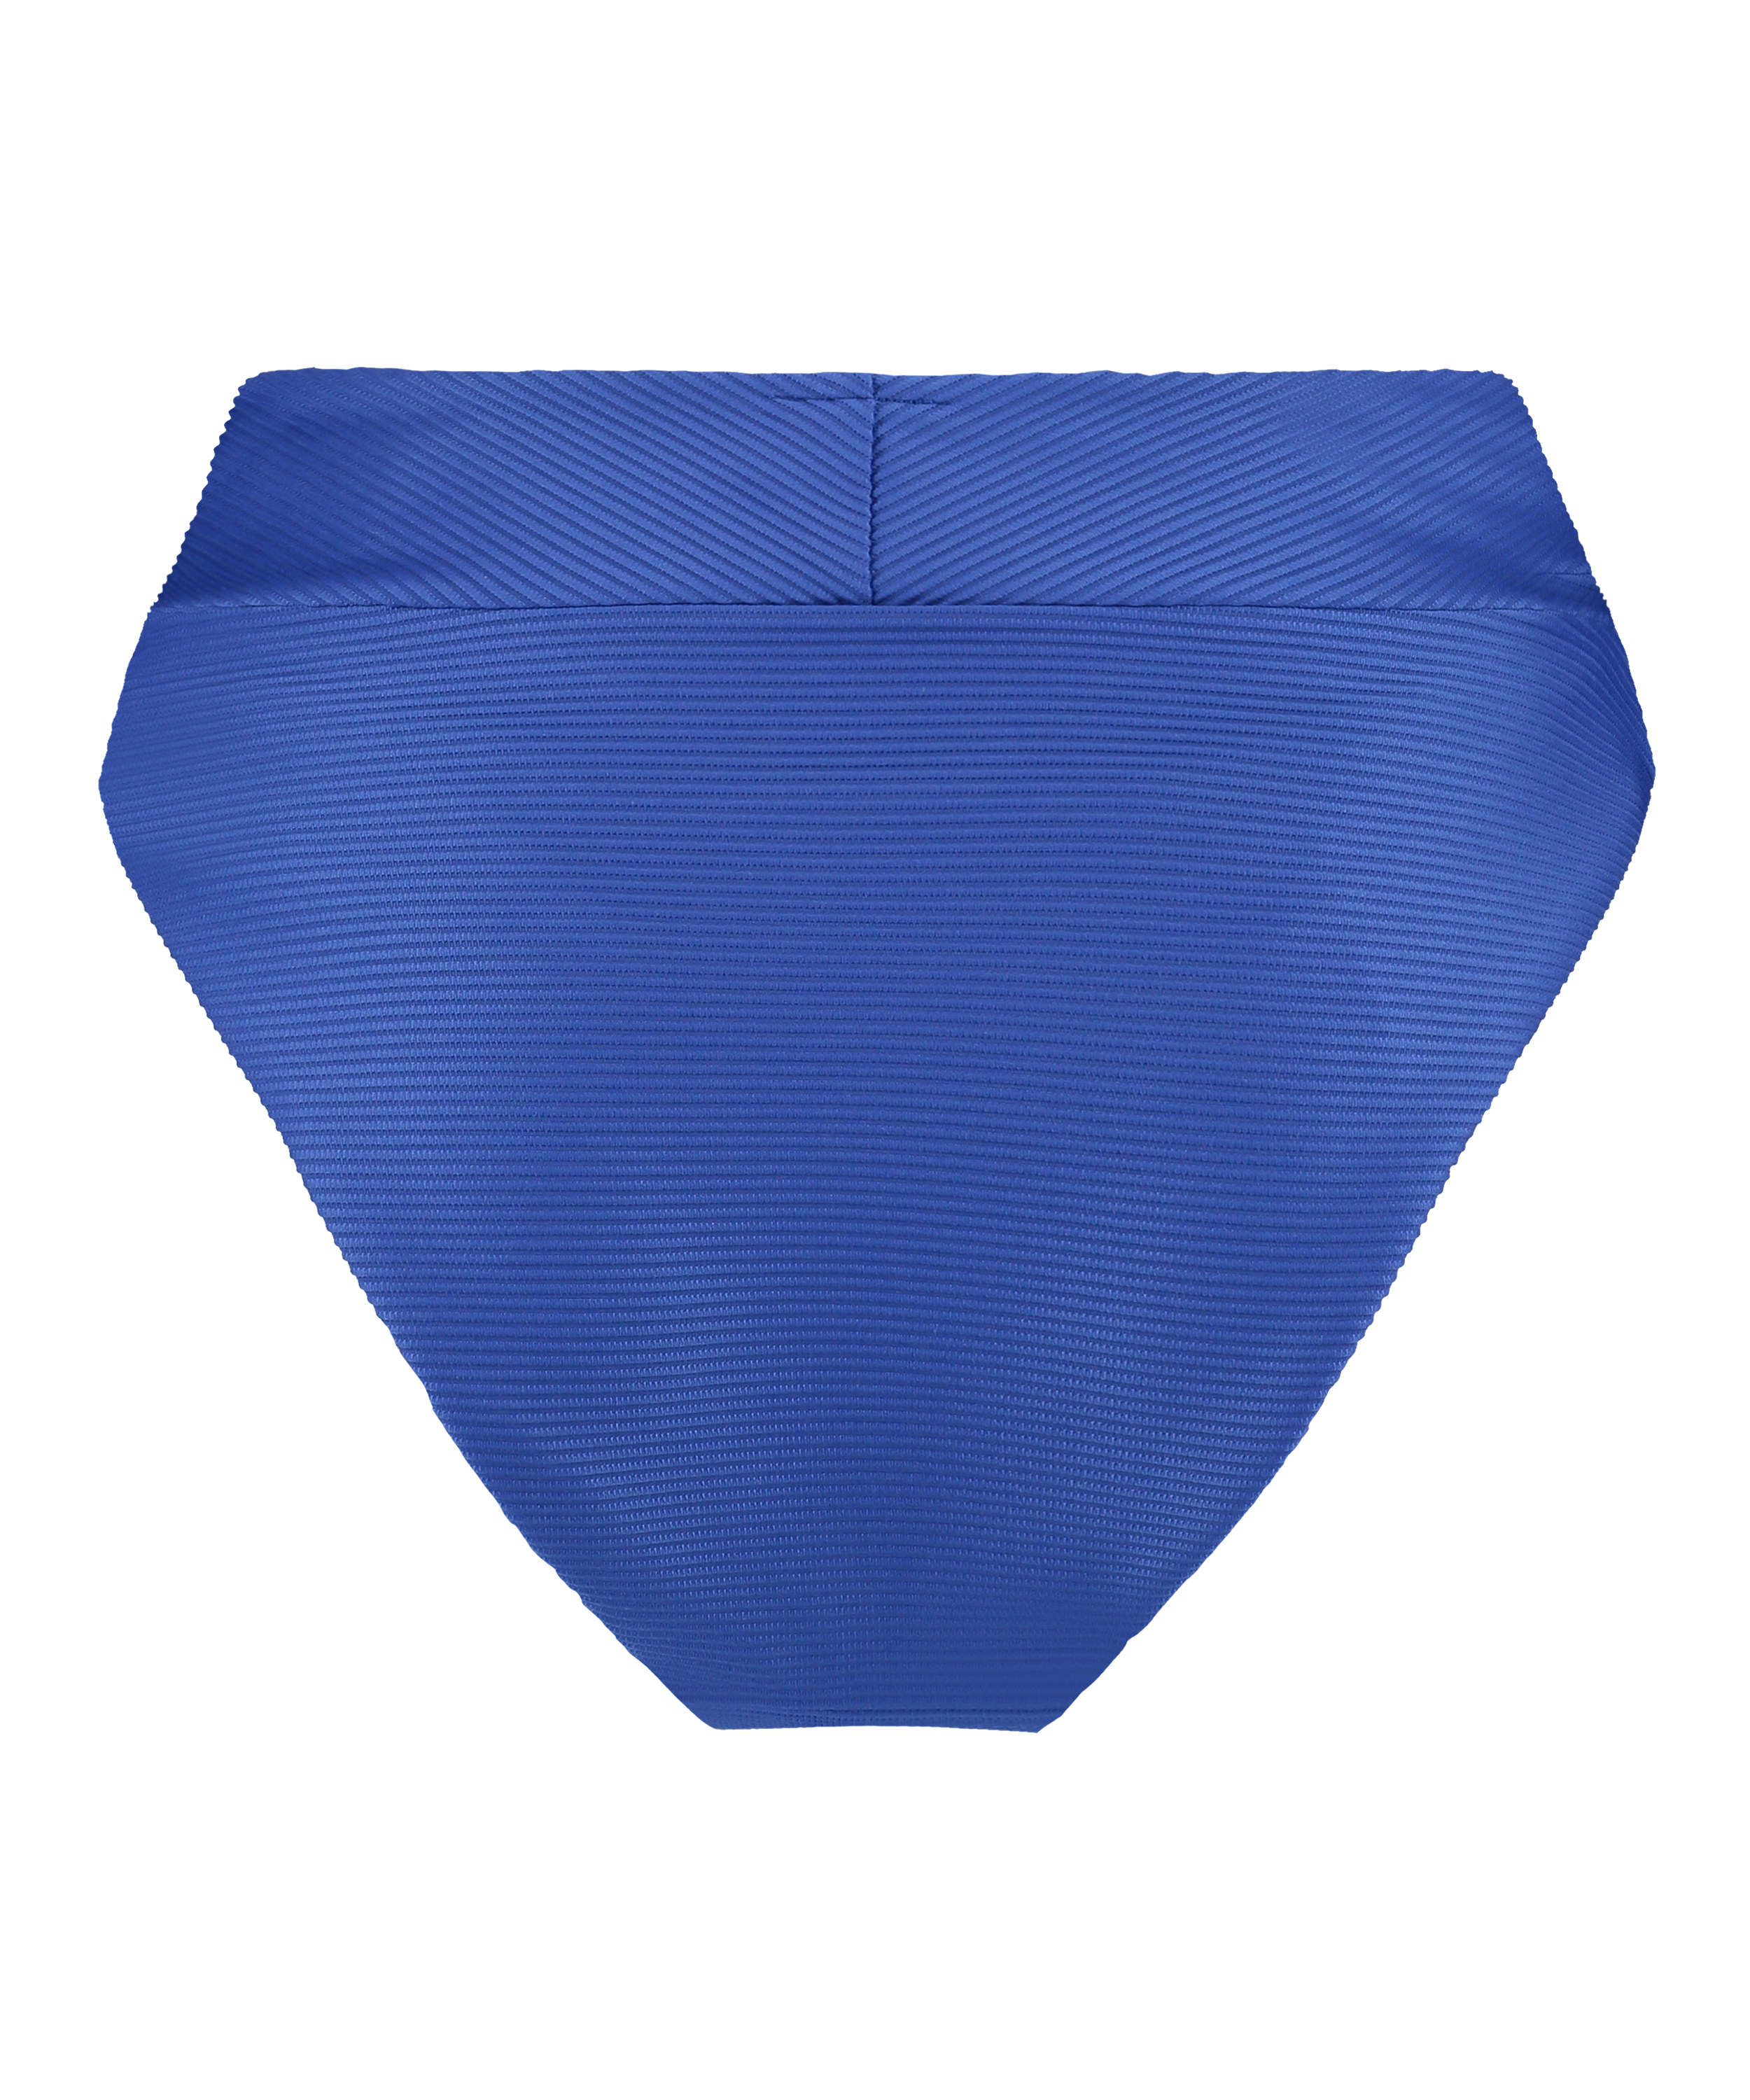 Braguita de bikini de corte alto Rib Lagoon, Azul, main